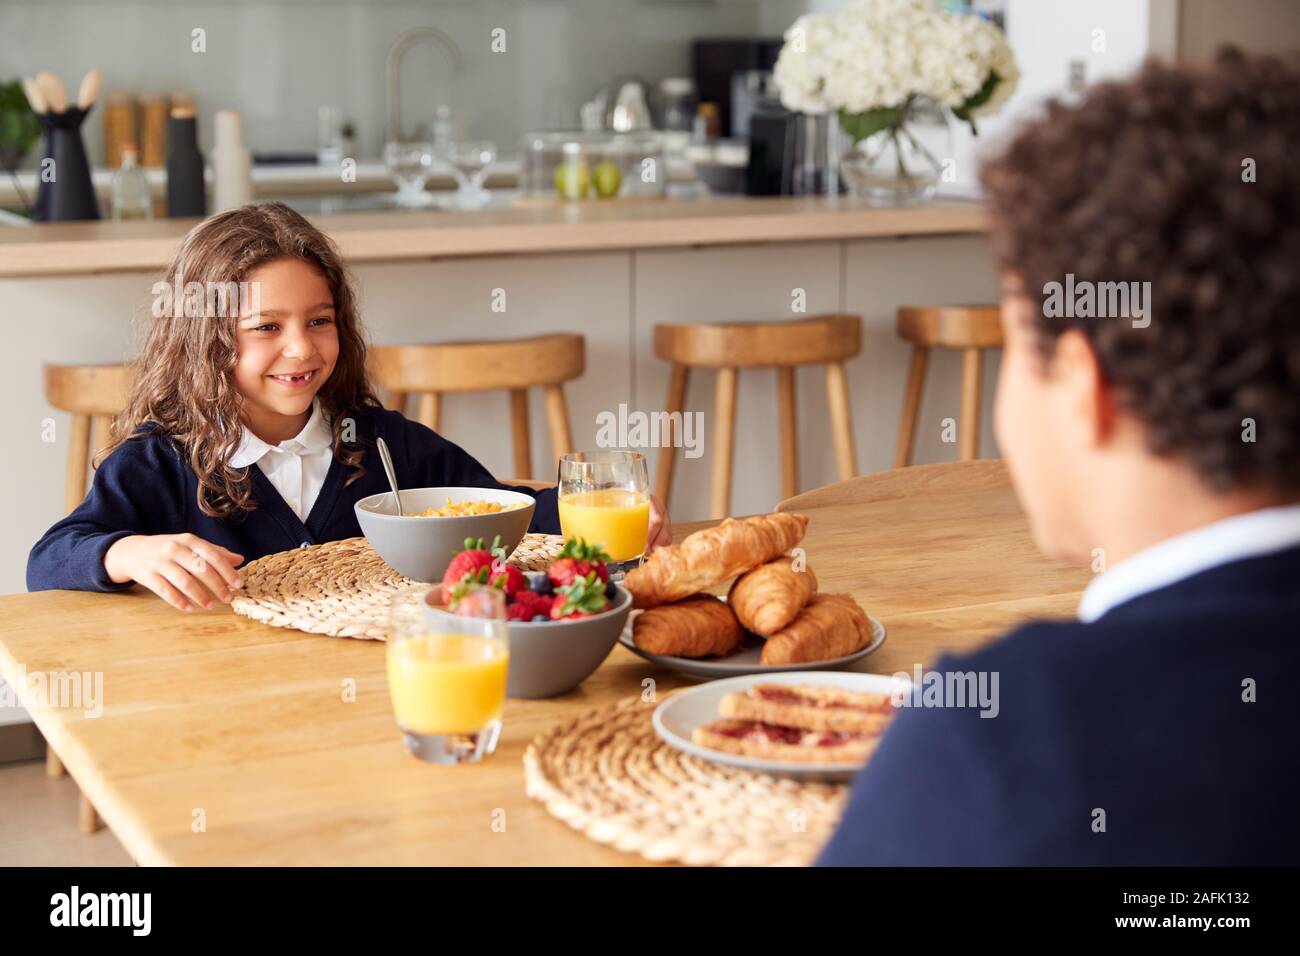 Kinder Uniform tragen In der Küche Frühstücken, bevor sie in die Schule gehen Stockfoto